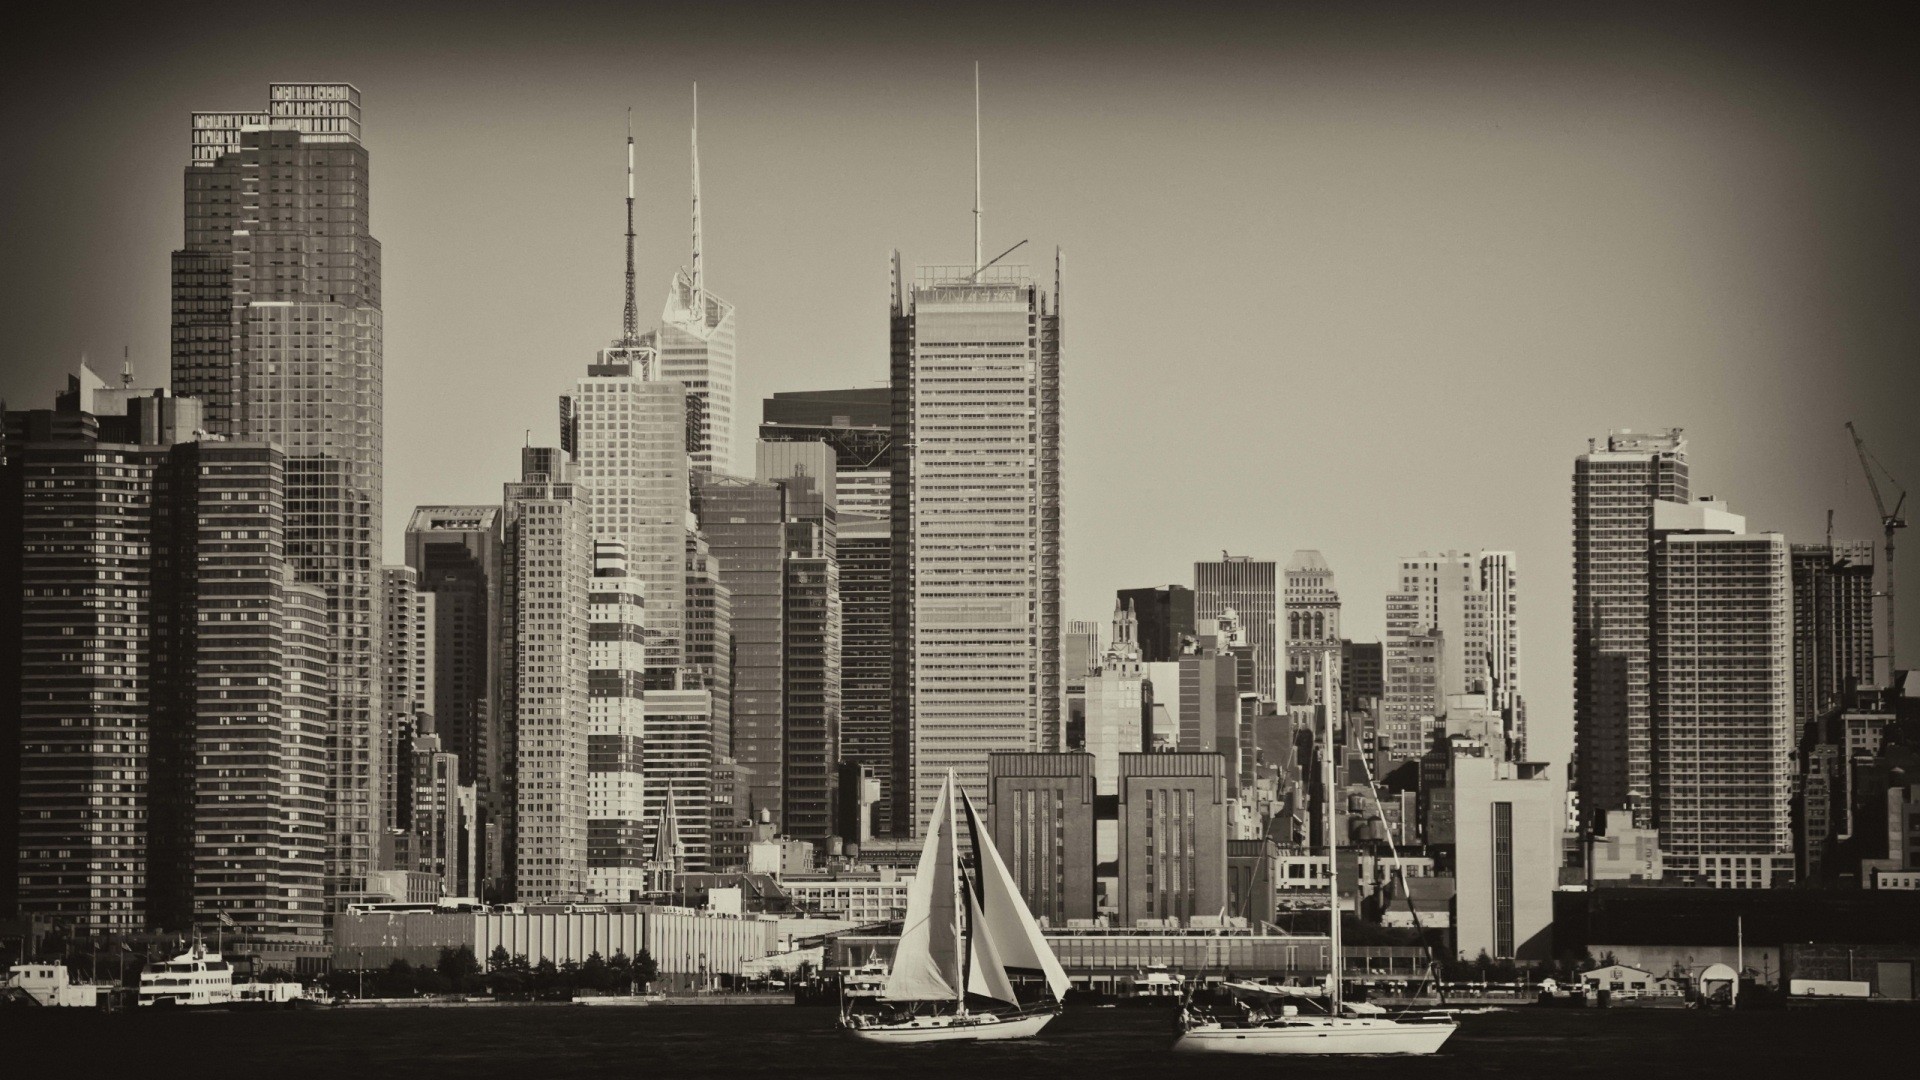 General 1920x1080 photography monochrome cityscape city building skyscraper boat sepia